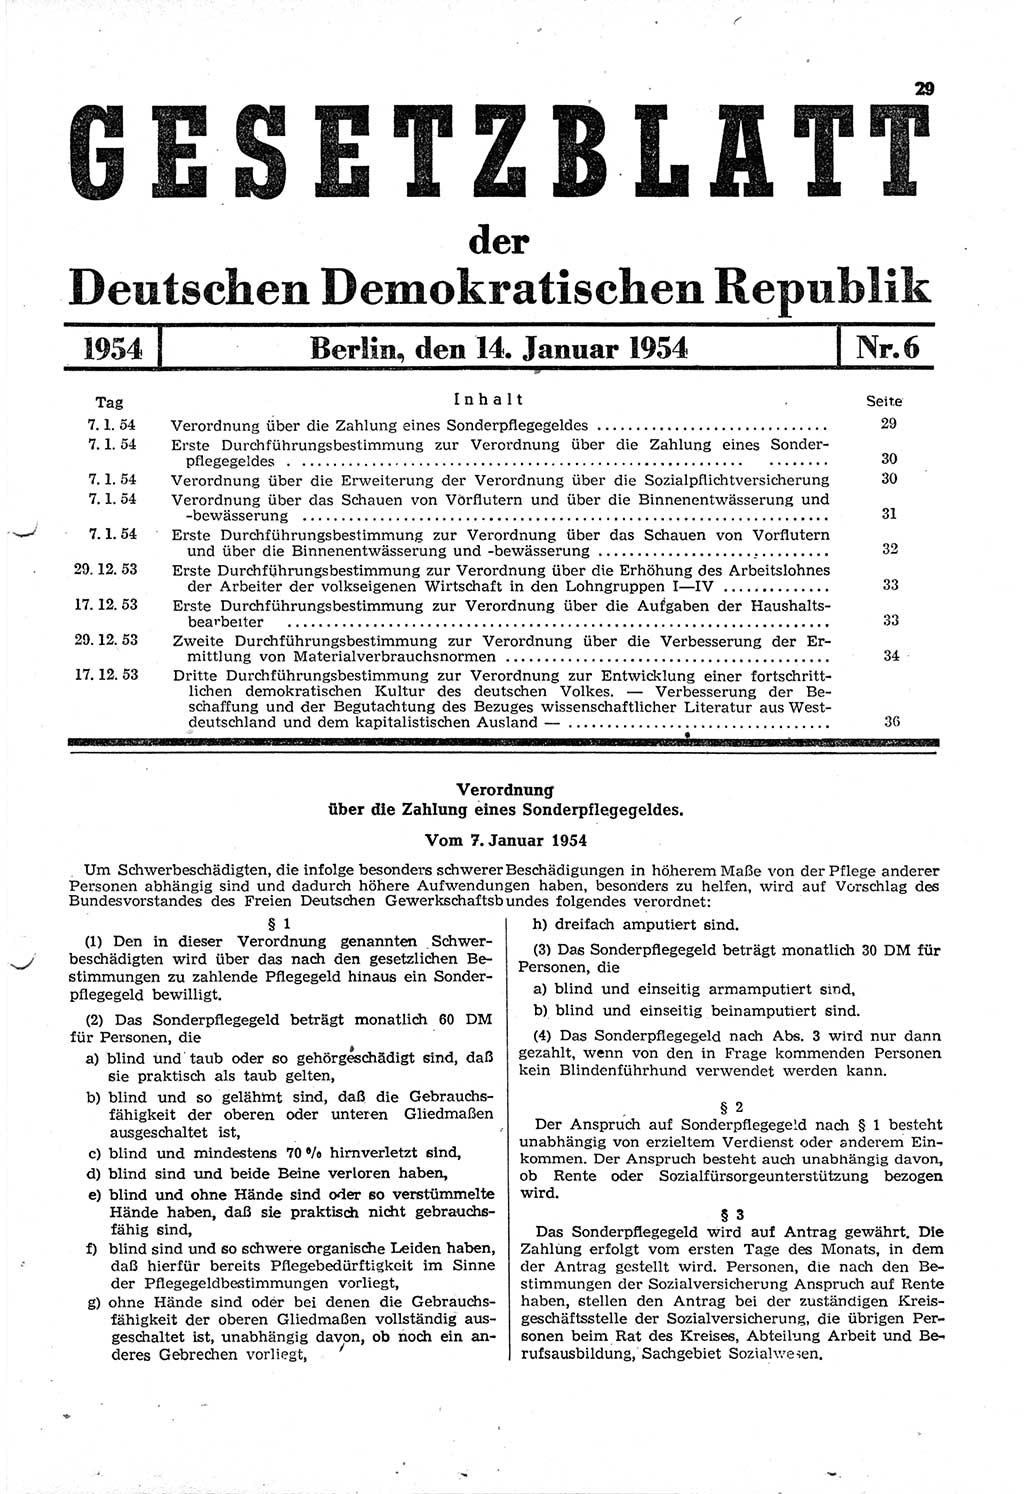 Gesetzblatt (GBl.) der Deutschen Demokratischen Republik (DDR) 1954, Seite 29 (GBl. DDR 1954, S. 29)